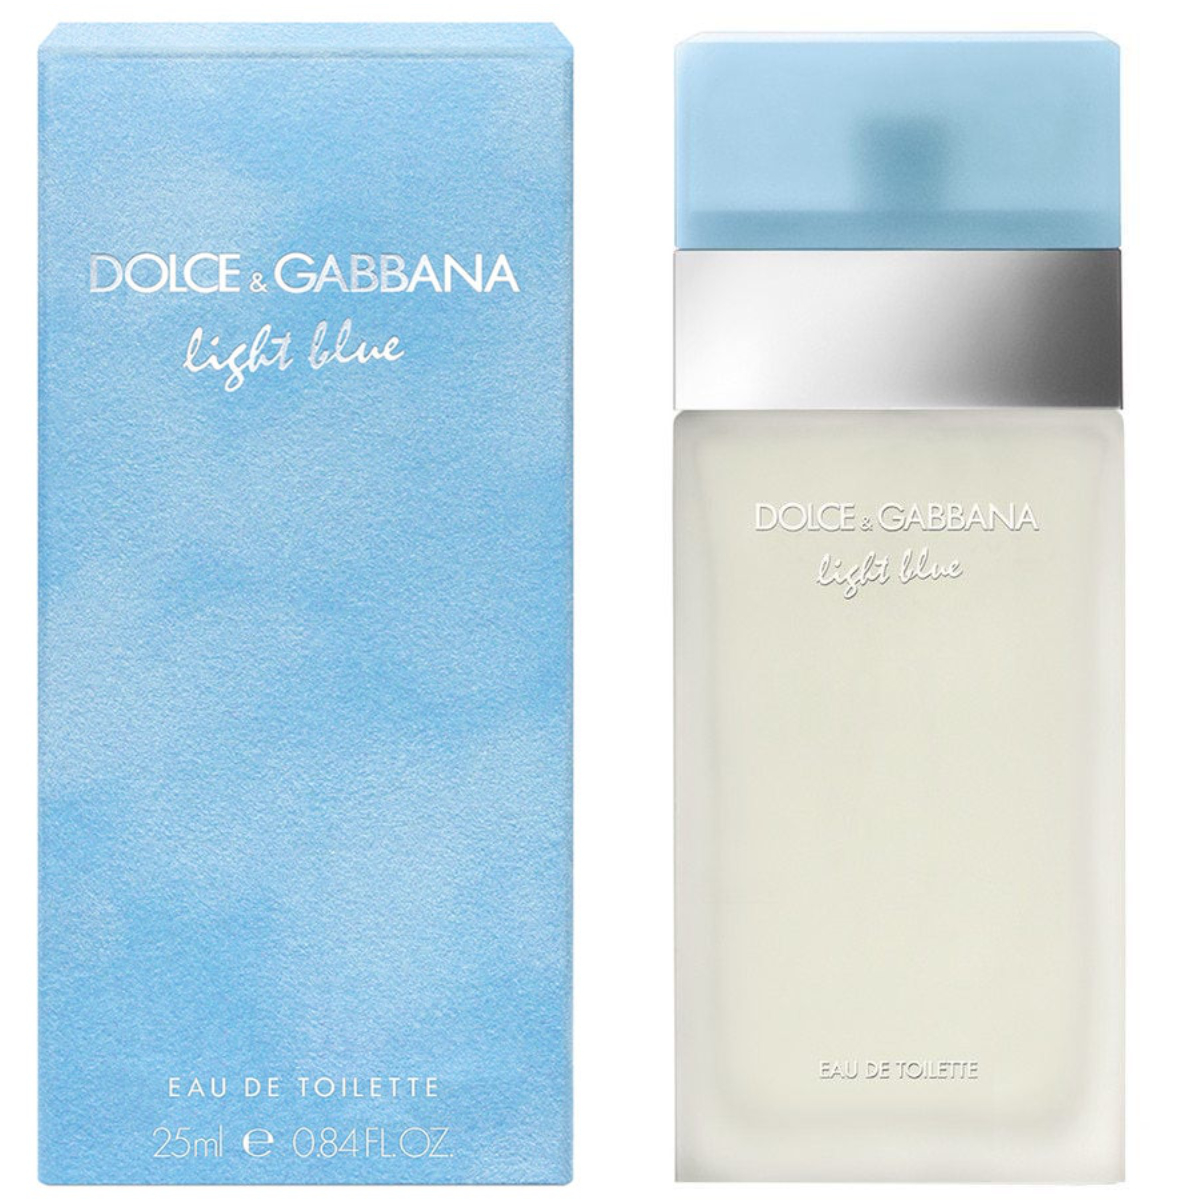 Dolce & Gabbana light blue 100ml Eau de Toilette